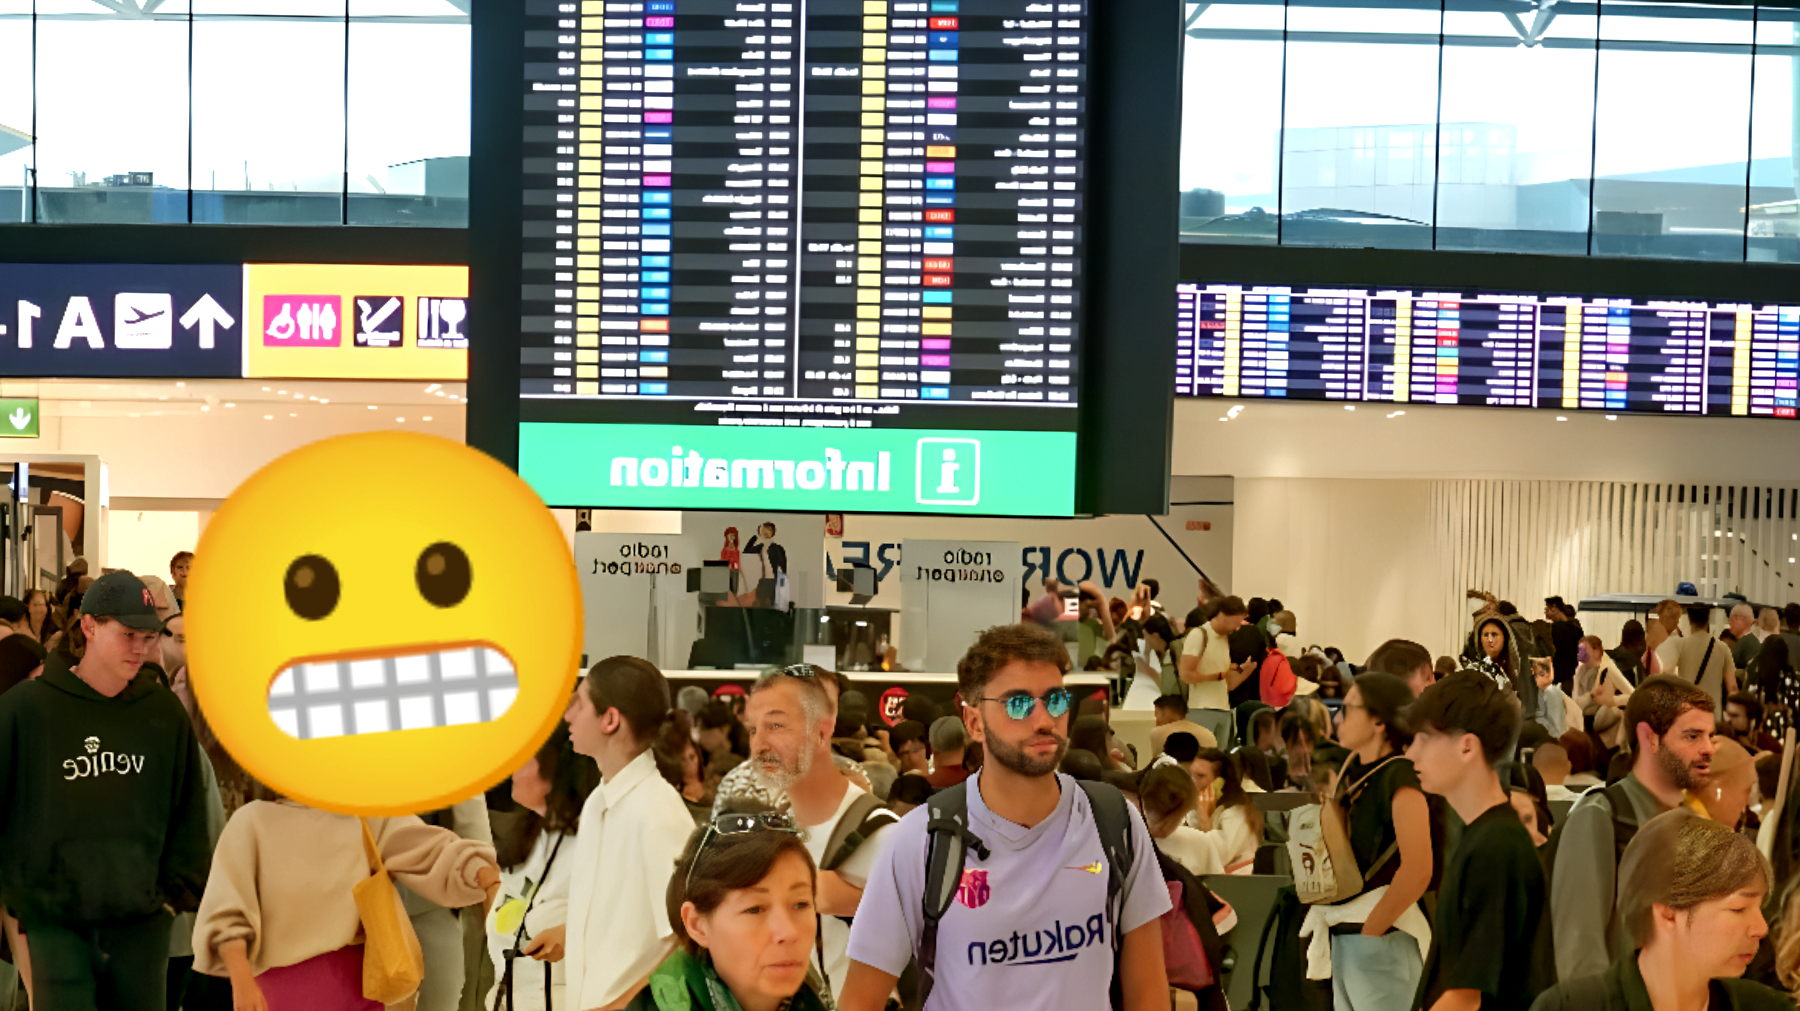 Aeroporti che ti fanno perdere la pazienza: la classifica europea che non ti aspetti!